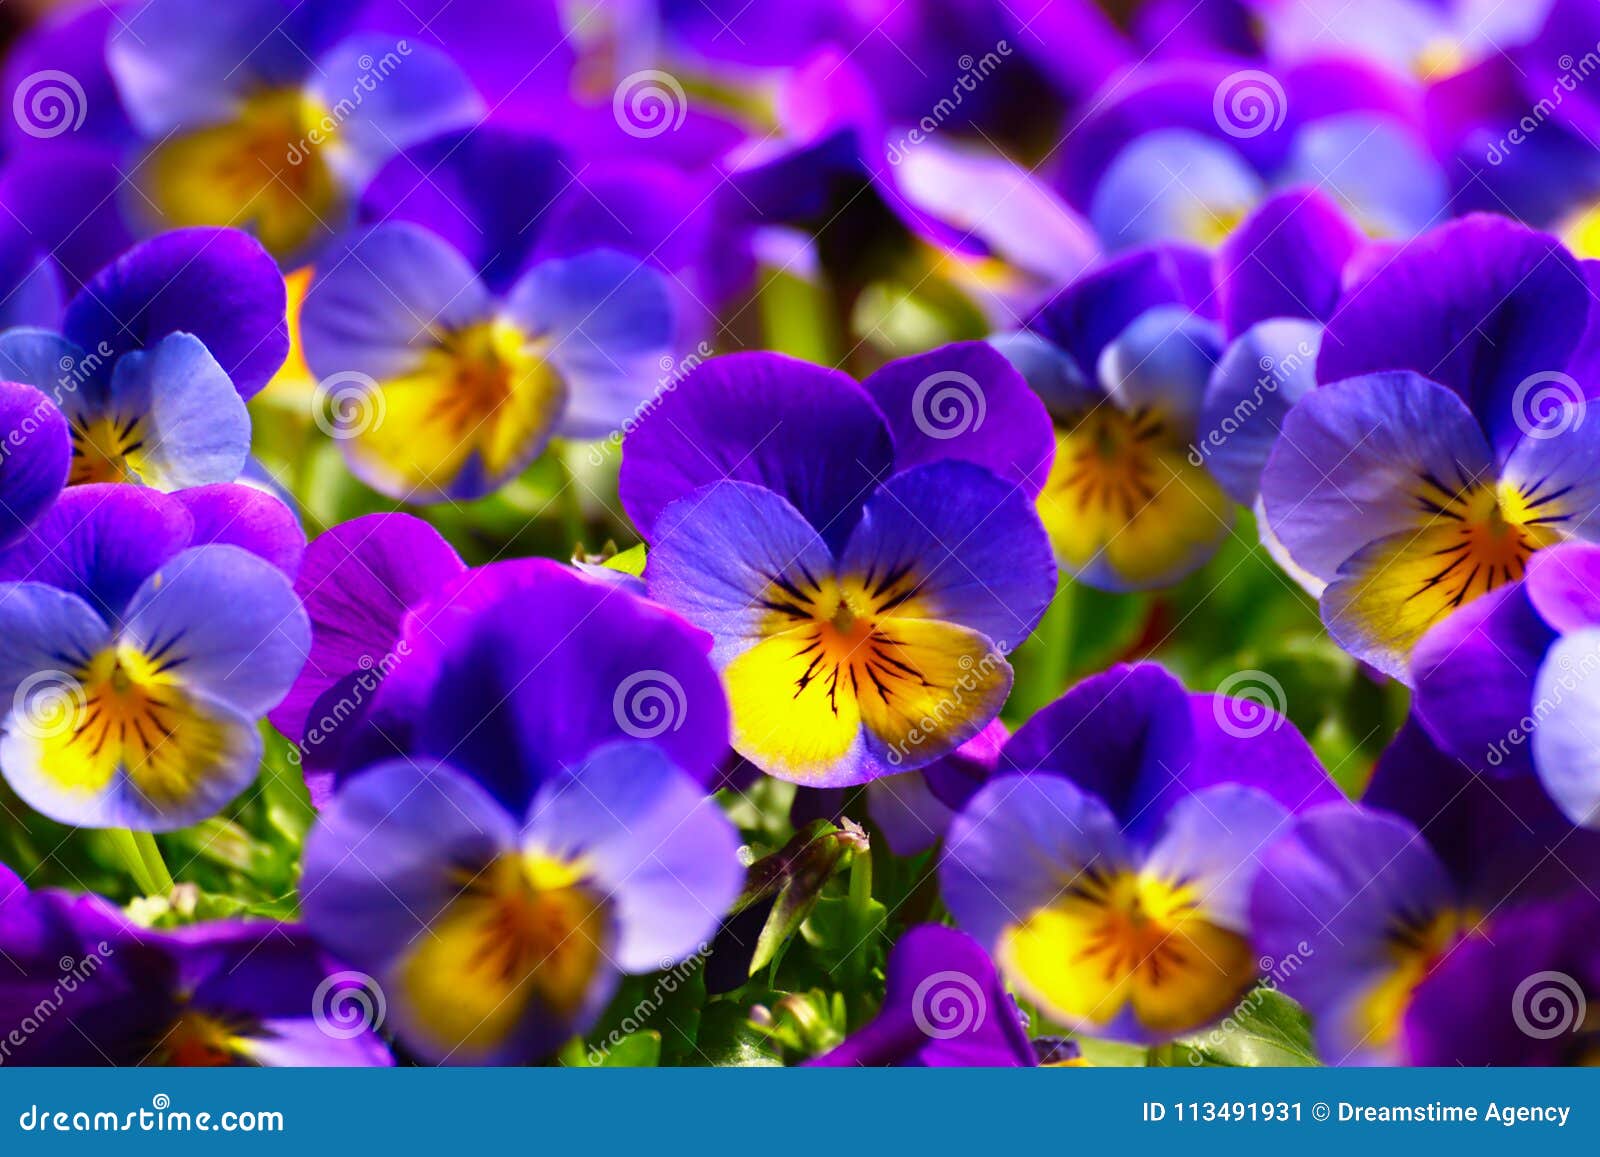 紫罗兰在春天库存图片. 图片包括有紫罗兰, 紫外, 蝴蝶花, 开花, 晴朗, 特写镜头, 春天, 庭院- 113491931